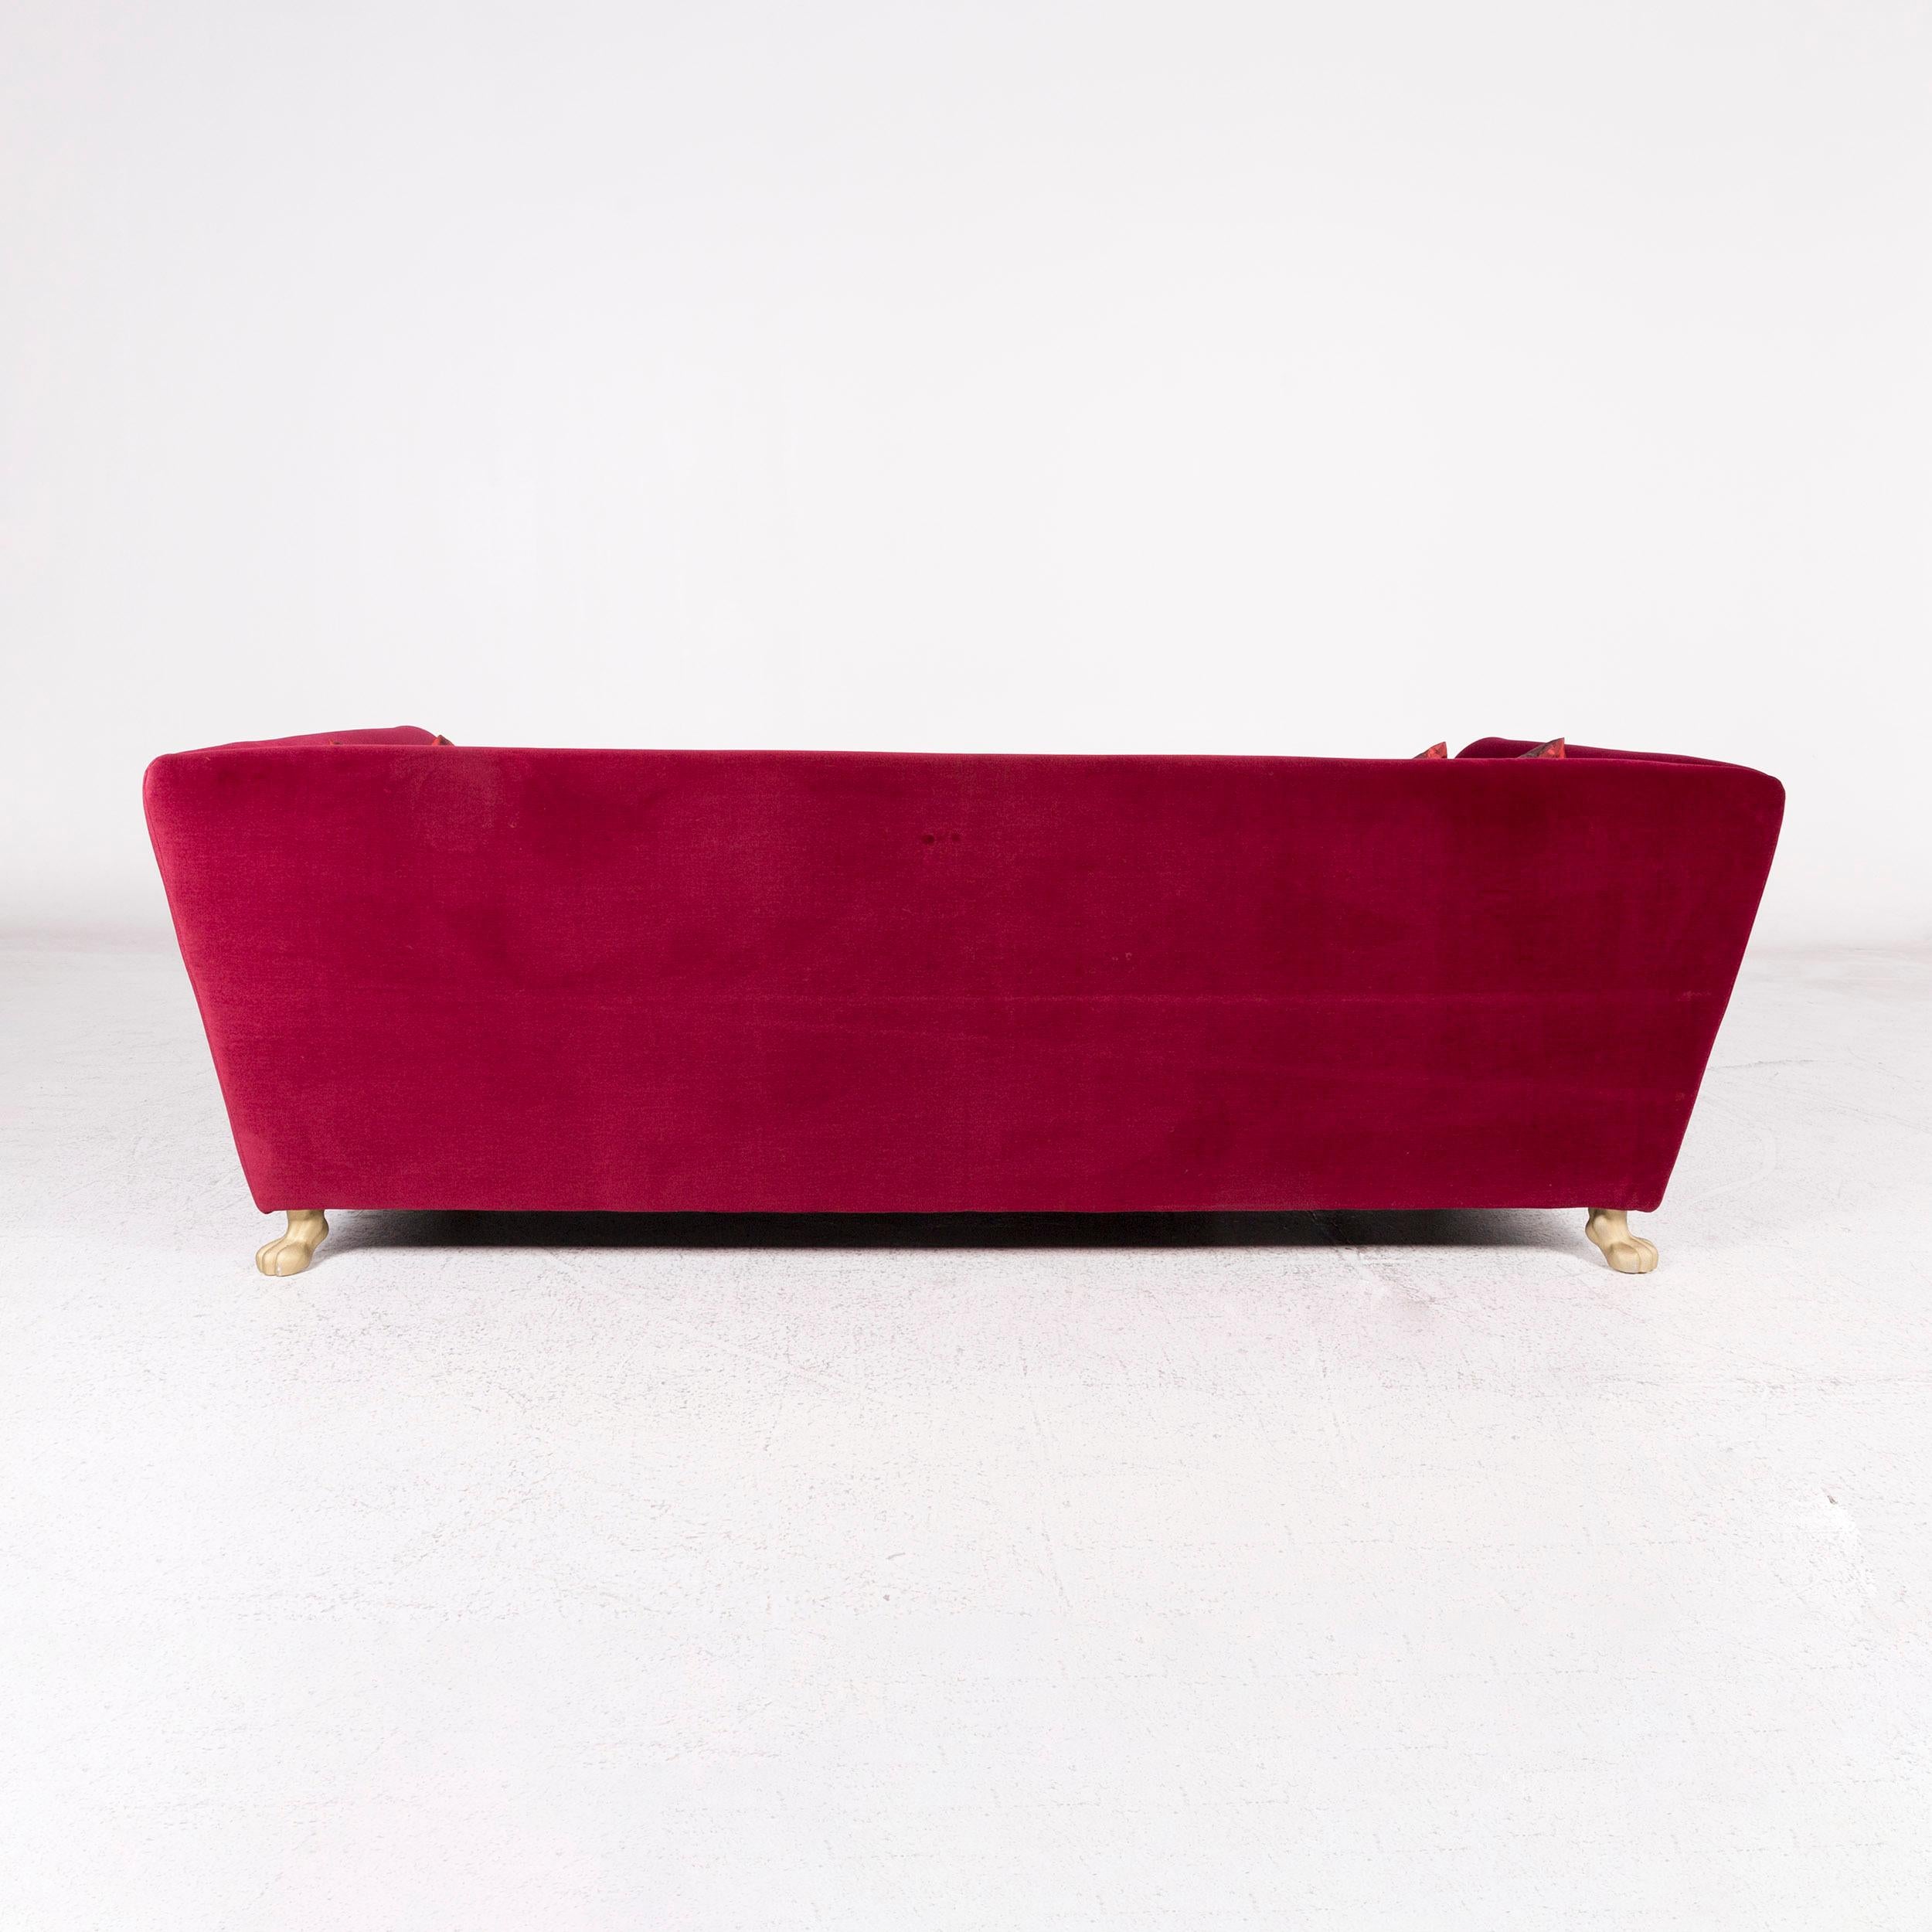 Bretz Monster Velvet Fabric Sofa Purple Four-Seat Couch For Sale 5